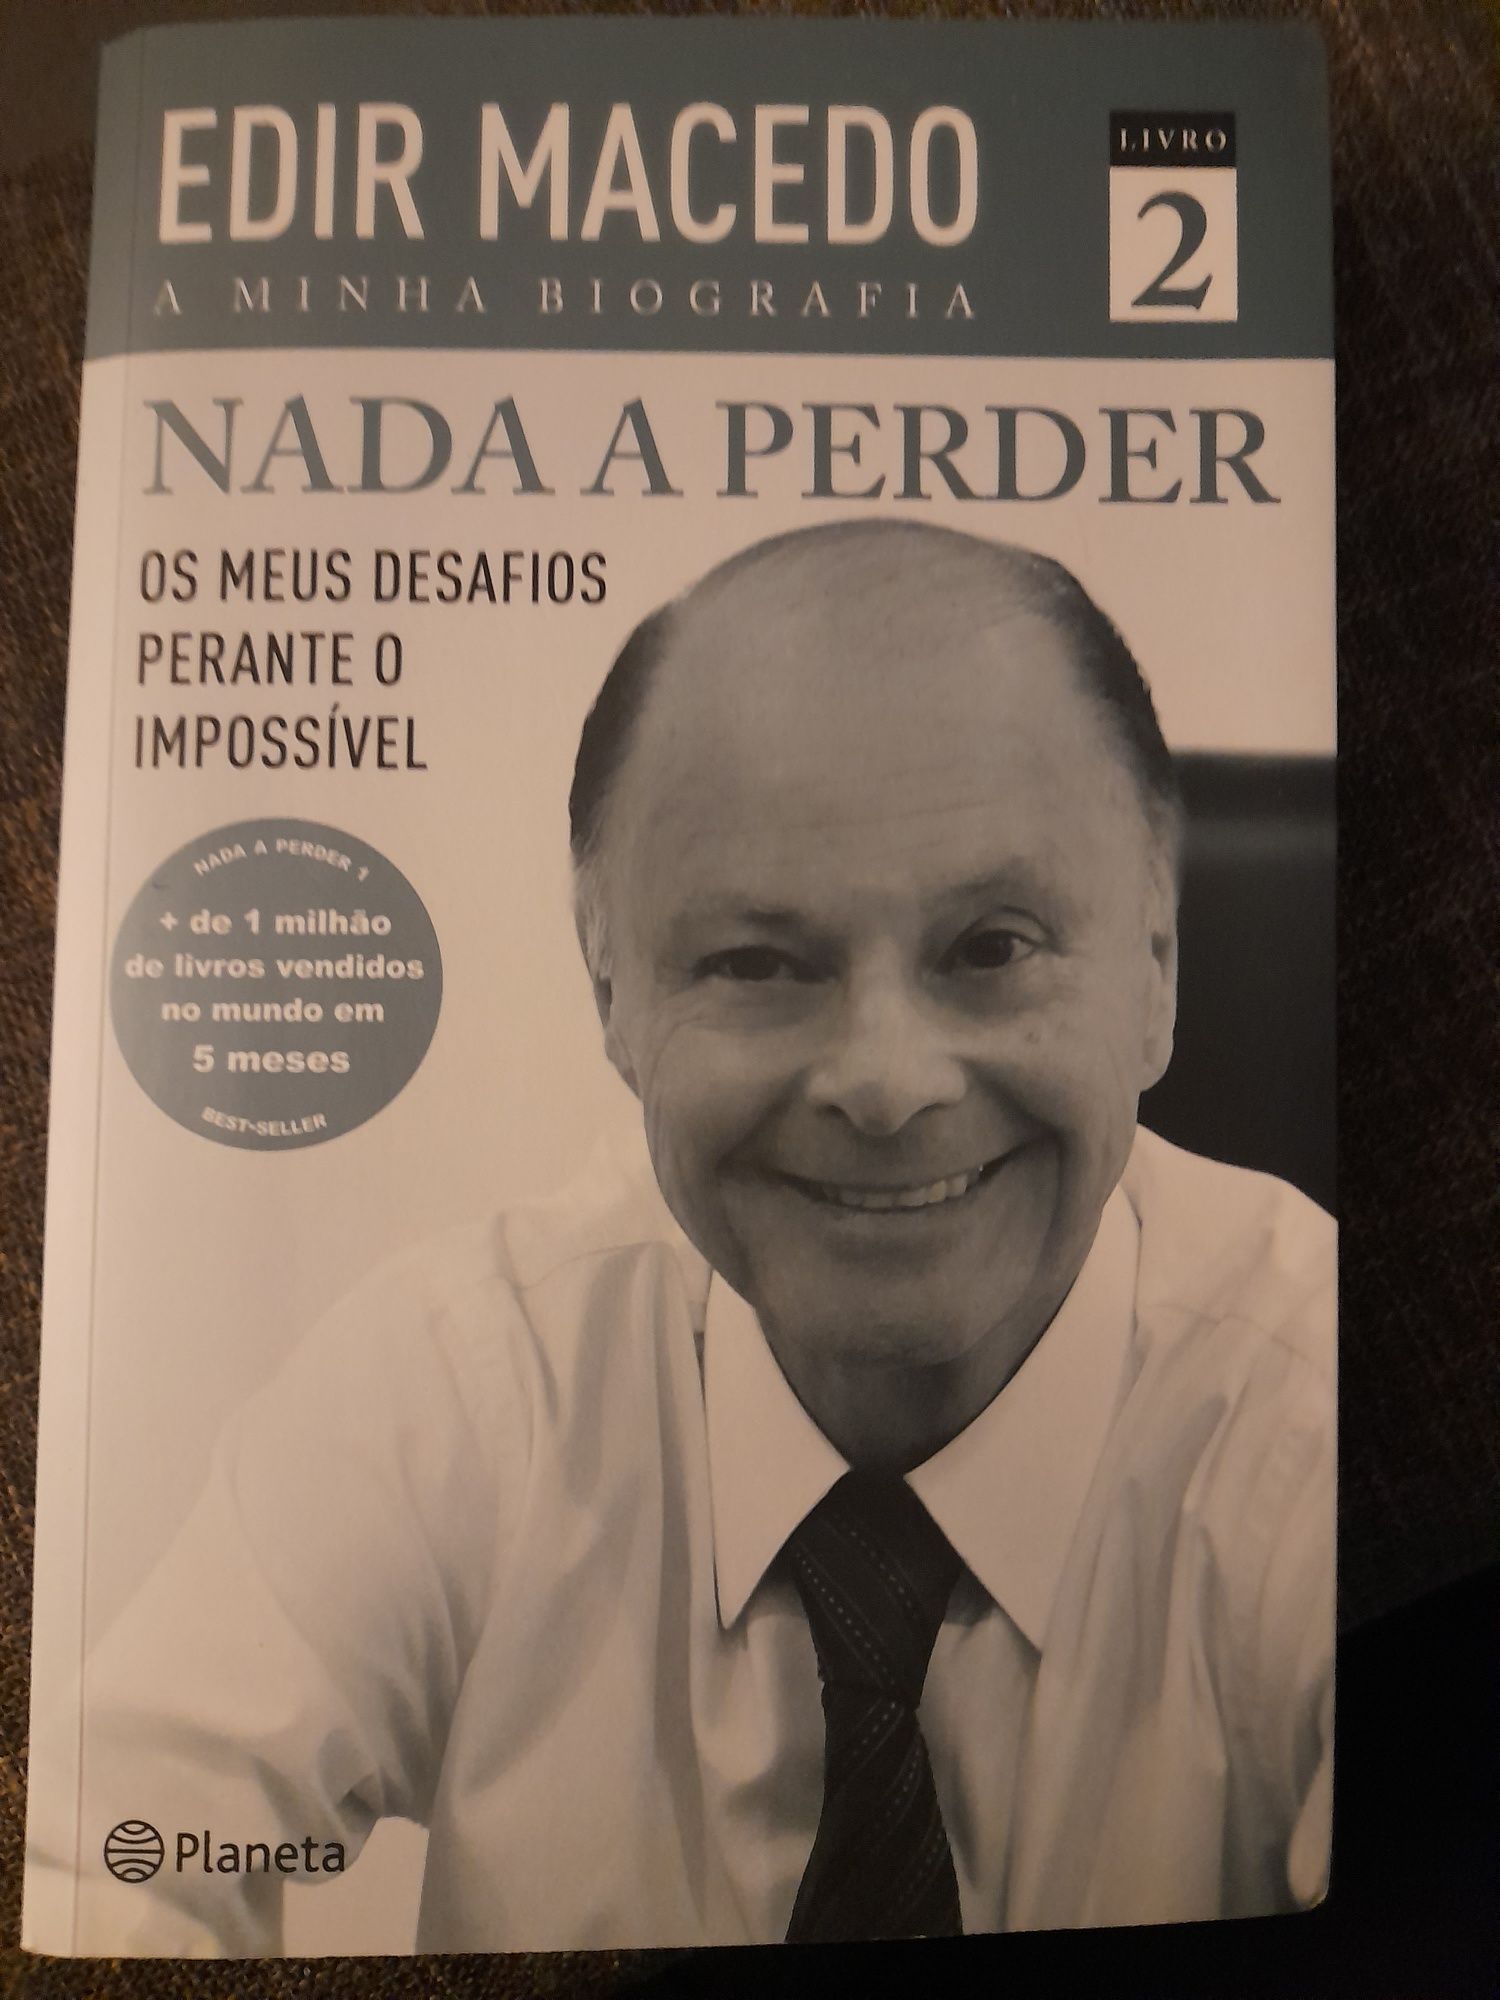 Livros - Nada a Perder, A Minha Biografia, Volume 1 e 2